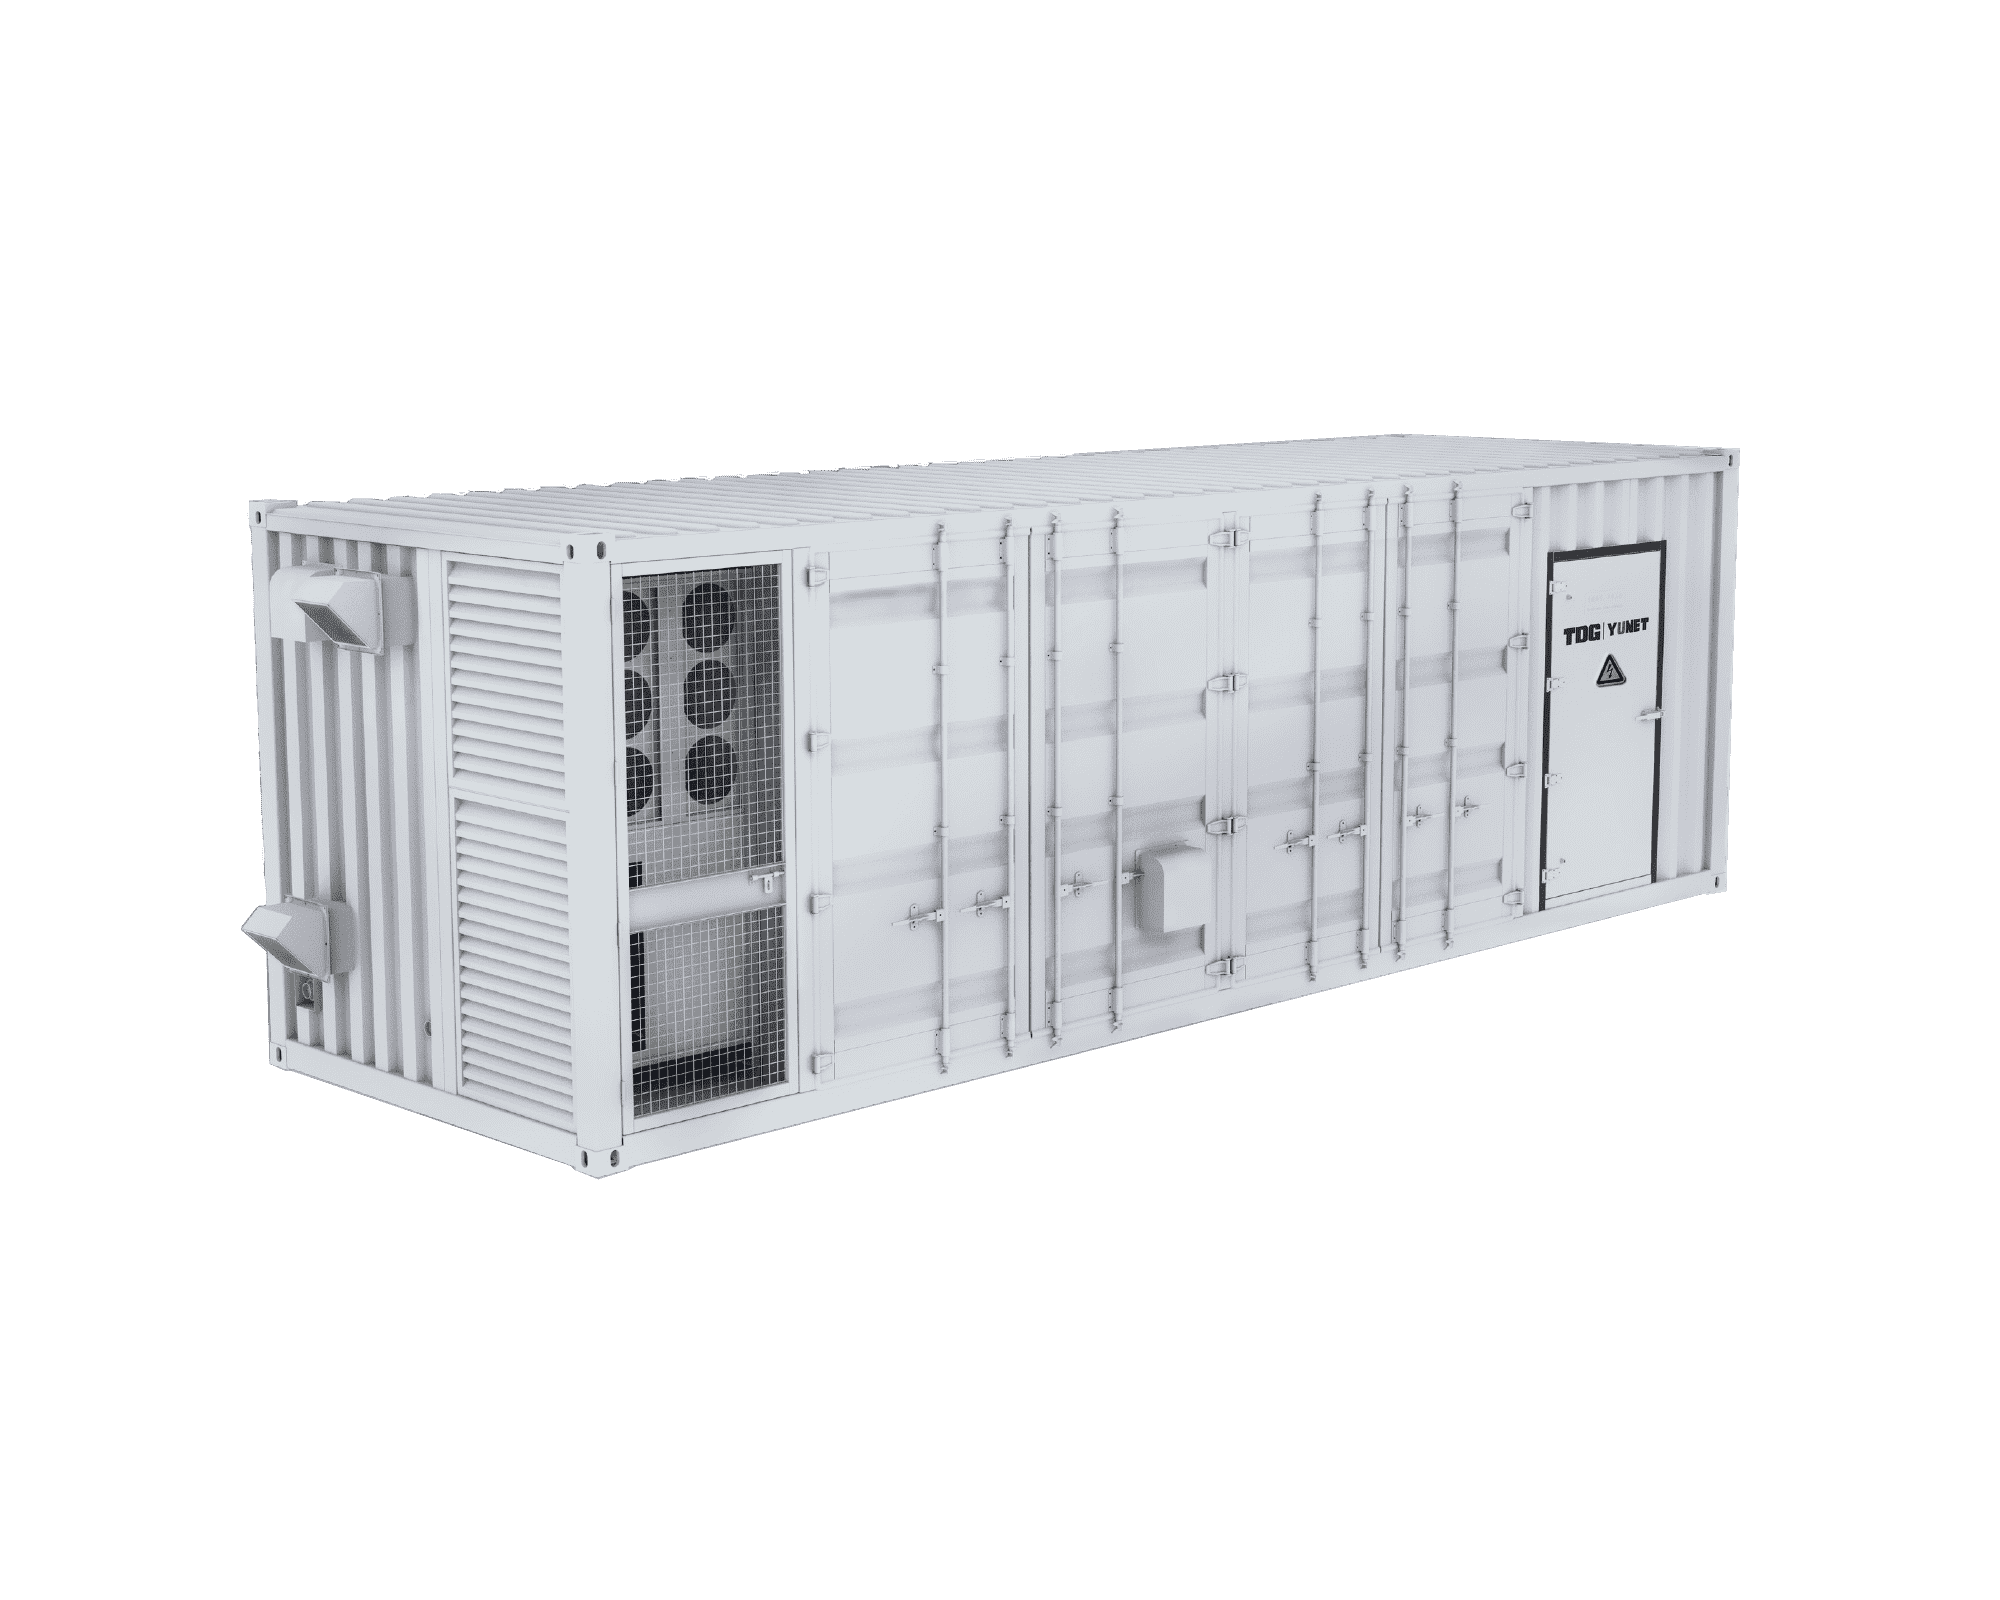 Ue - Liquid Cooling Container